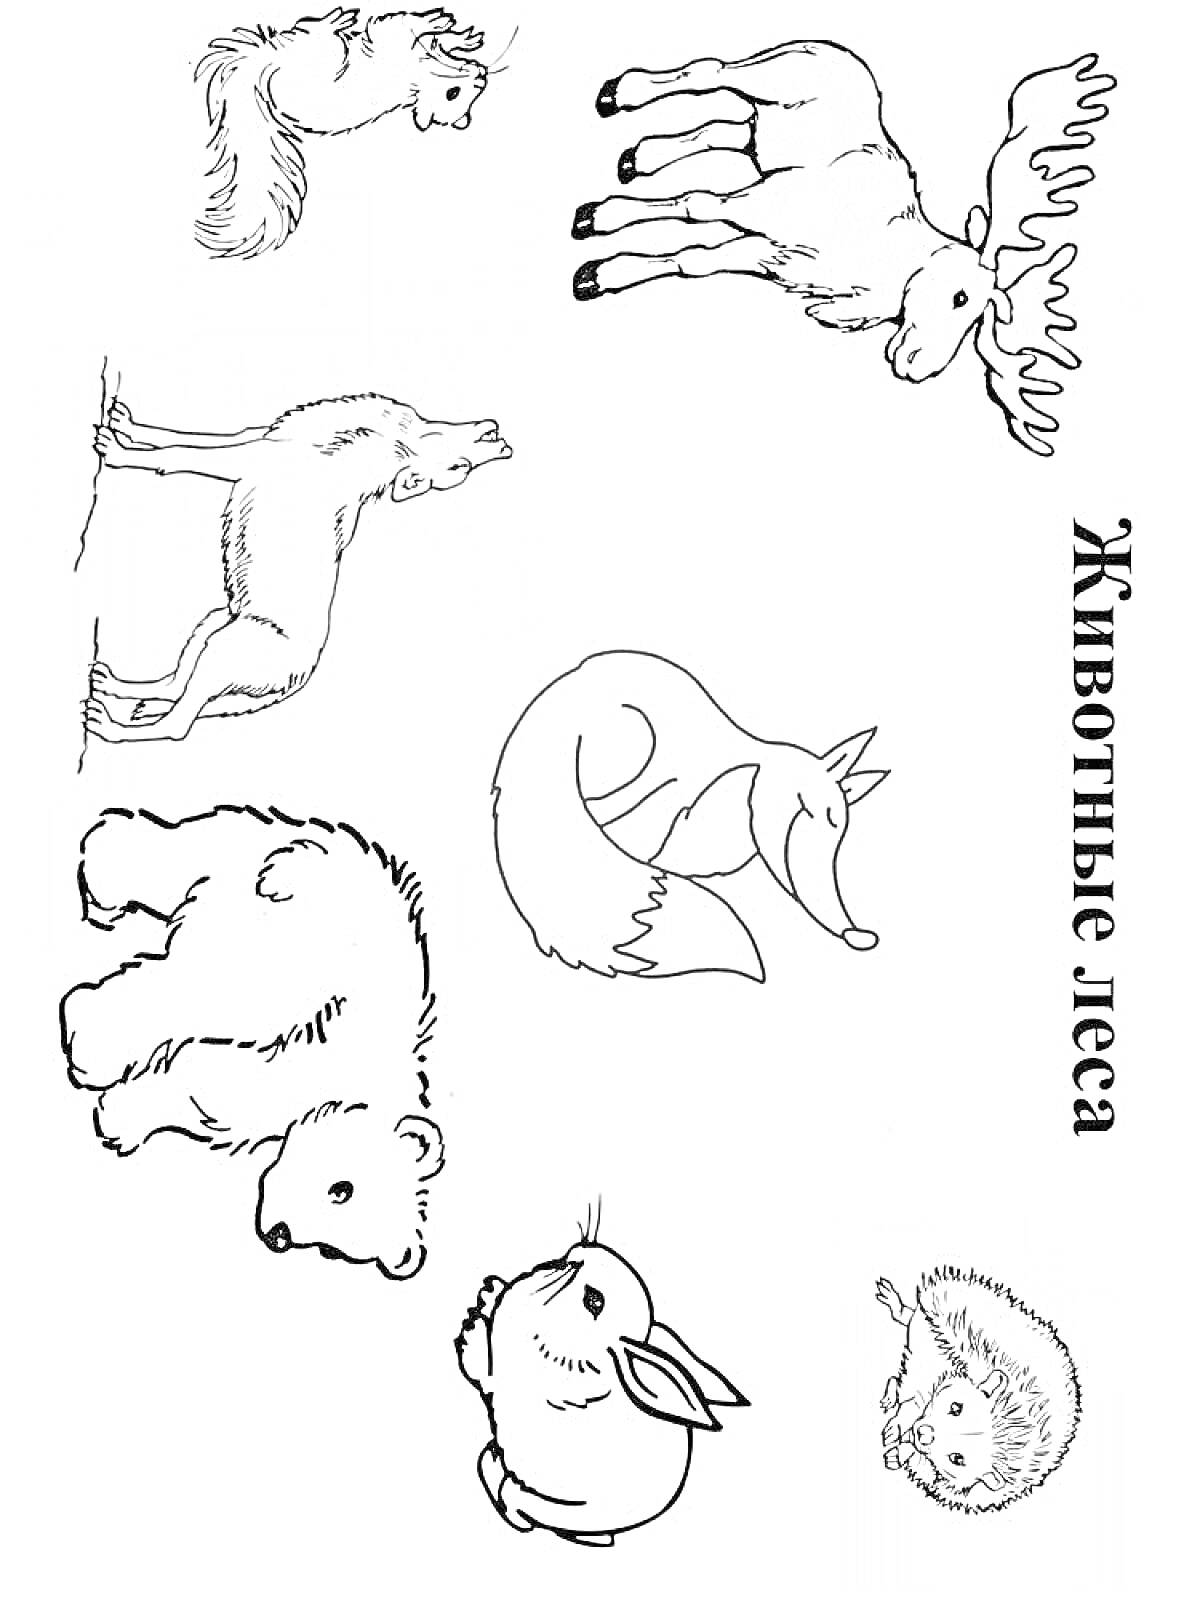 Раскраска Лесные животные: белка, лось, волк, лиса, медведь, заяц, ежик.